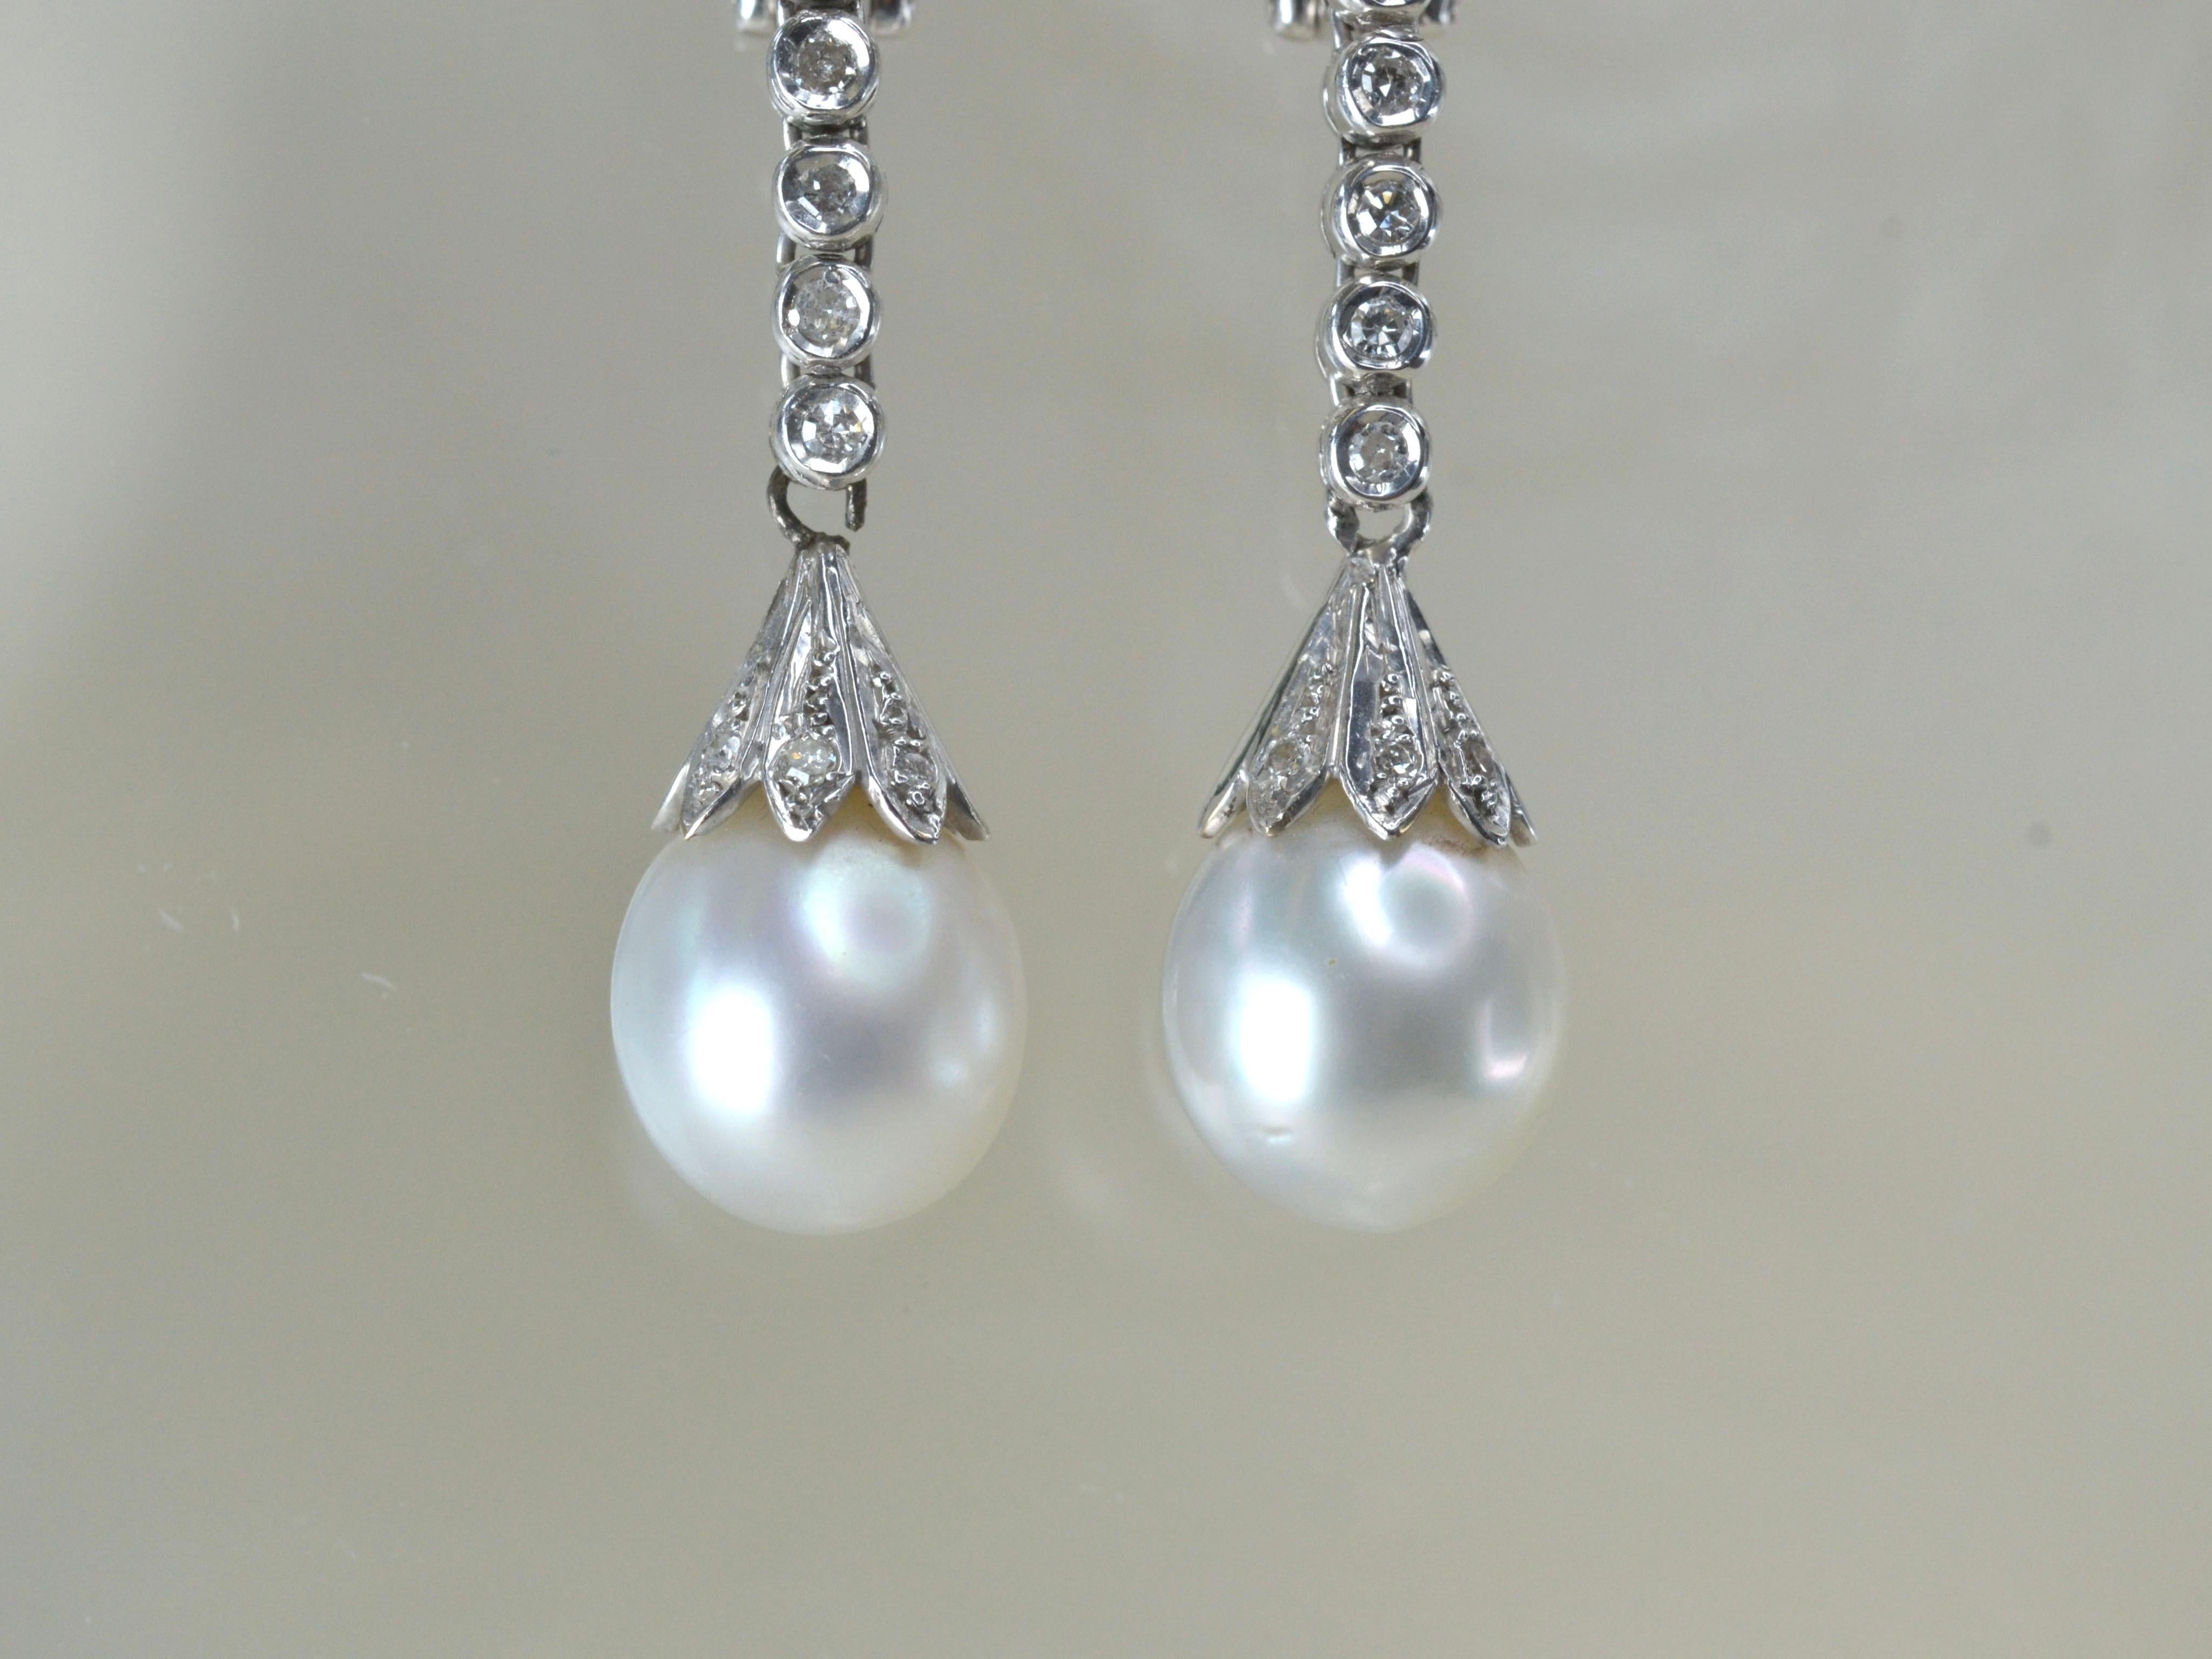 1970er Jahre Clip auf Ohrringe baumeln. 
Jeder tropfenförmige Ohrring besteht aus einer großen weißen Perle und 20 runden weißen Diamanten, die in 9 Karat Weißgold gefasst sind. Diese eleganten Ohrringe sind in sehr gutem Zustand, sie sind leicht